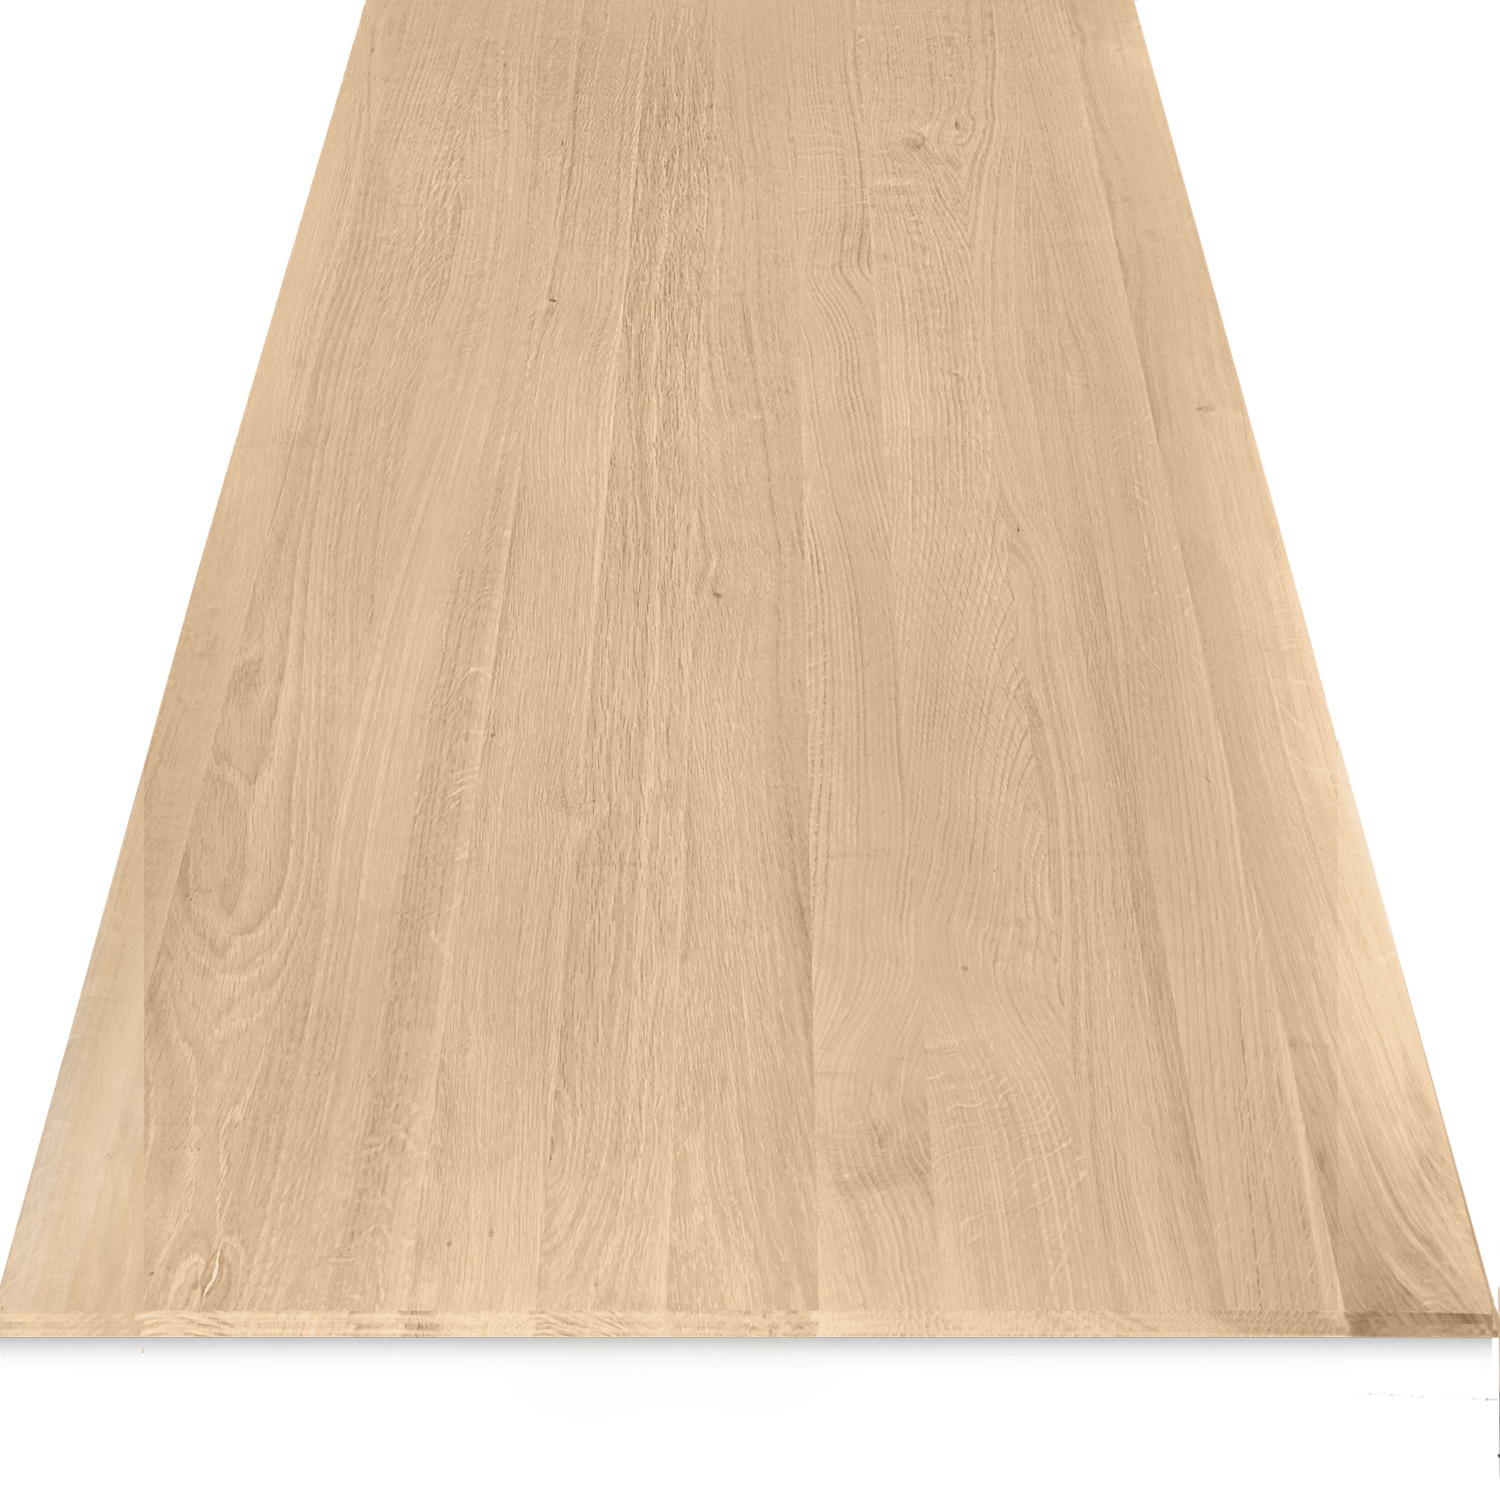  Eiken tafelblad met verjongde rand - 4 cm dik (1-laag) - Diverse afmetingen - foutvrij Europees eikenhout - met brede lamellen (circa 10-12 cm) - verlijmd kd 8-12%